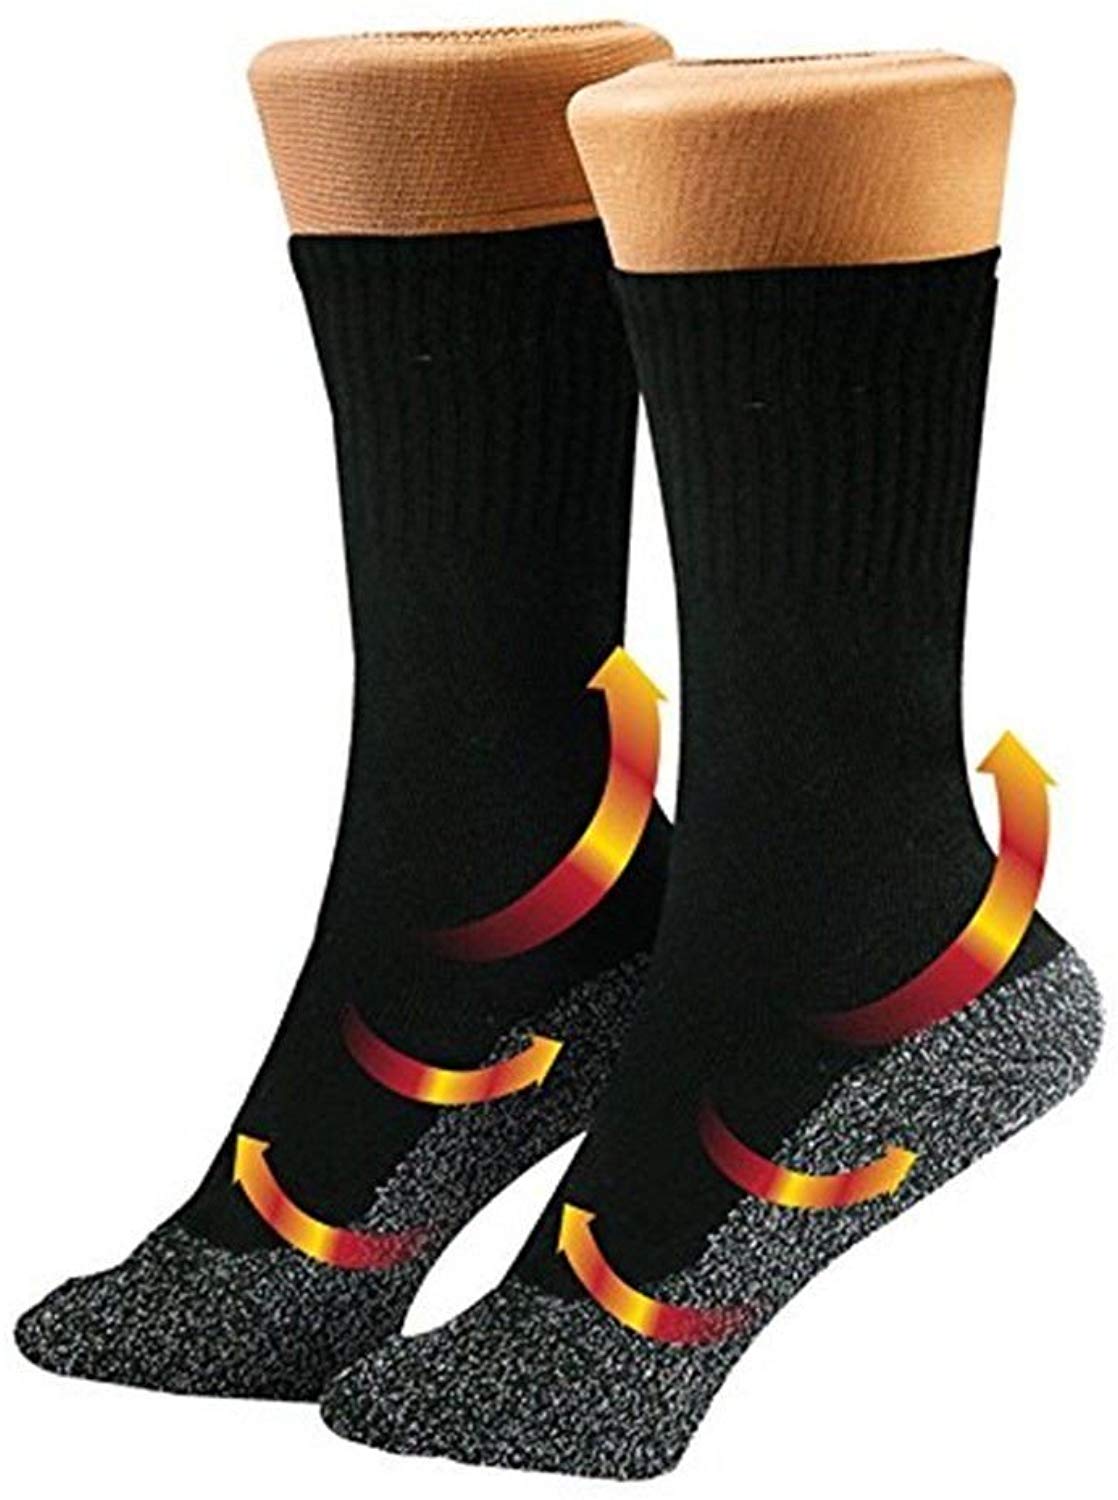 Термоноски Below socks оптом - Фото №2